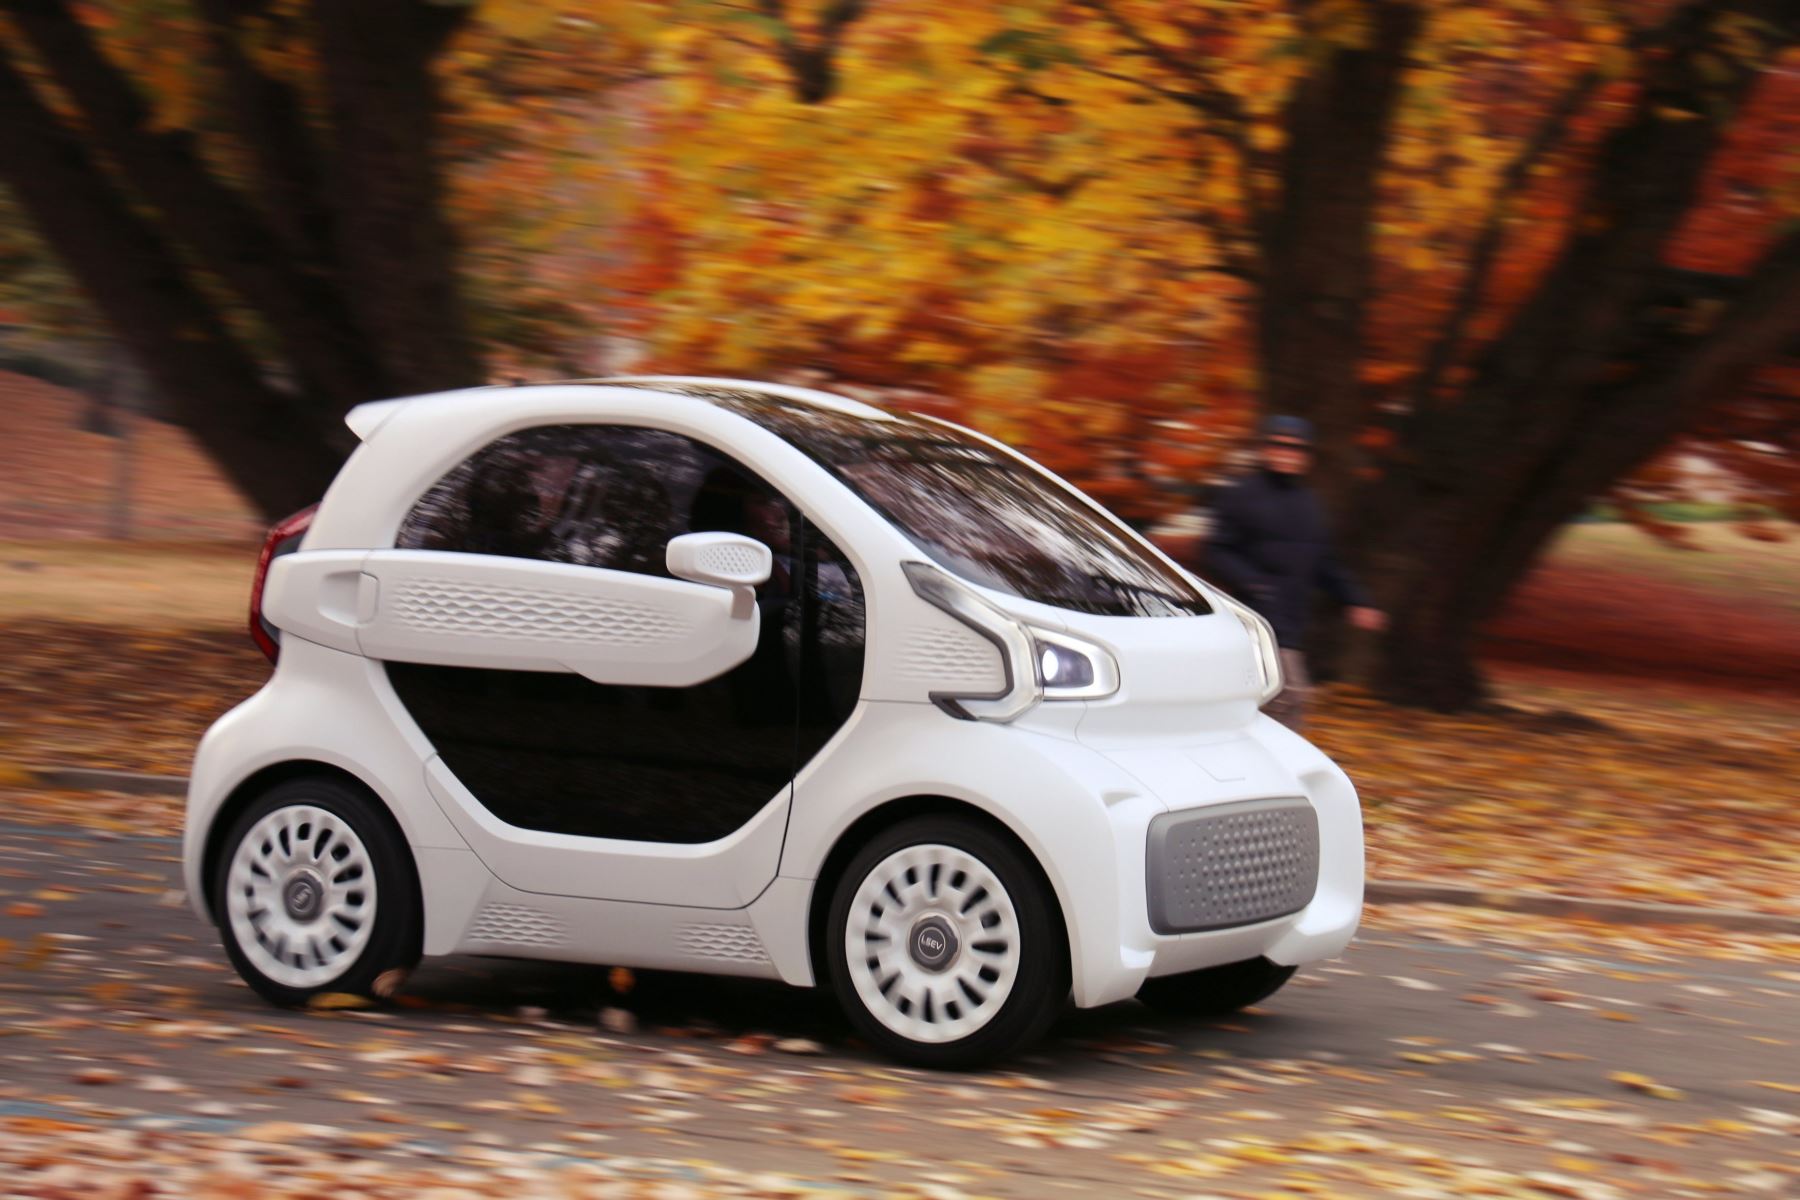 Fotografía cedida por XEV Limited, que muestra un automóvil eléctrico LSEV impreso en 3D, de la fabricante italiana X Electrical Vehicle, en Pianezza (Italia). EFE/ XEV Limited